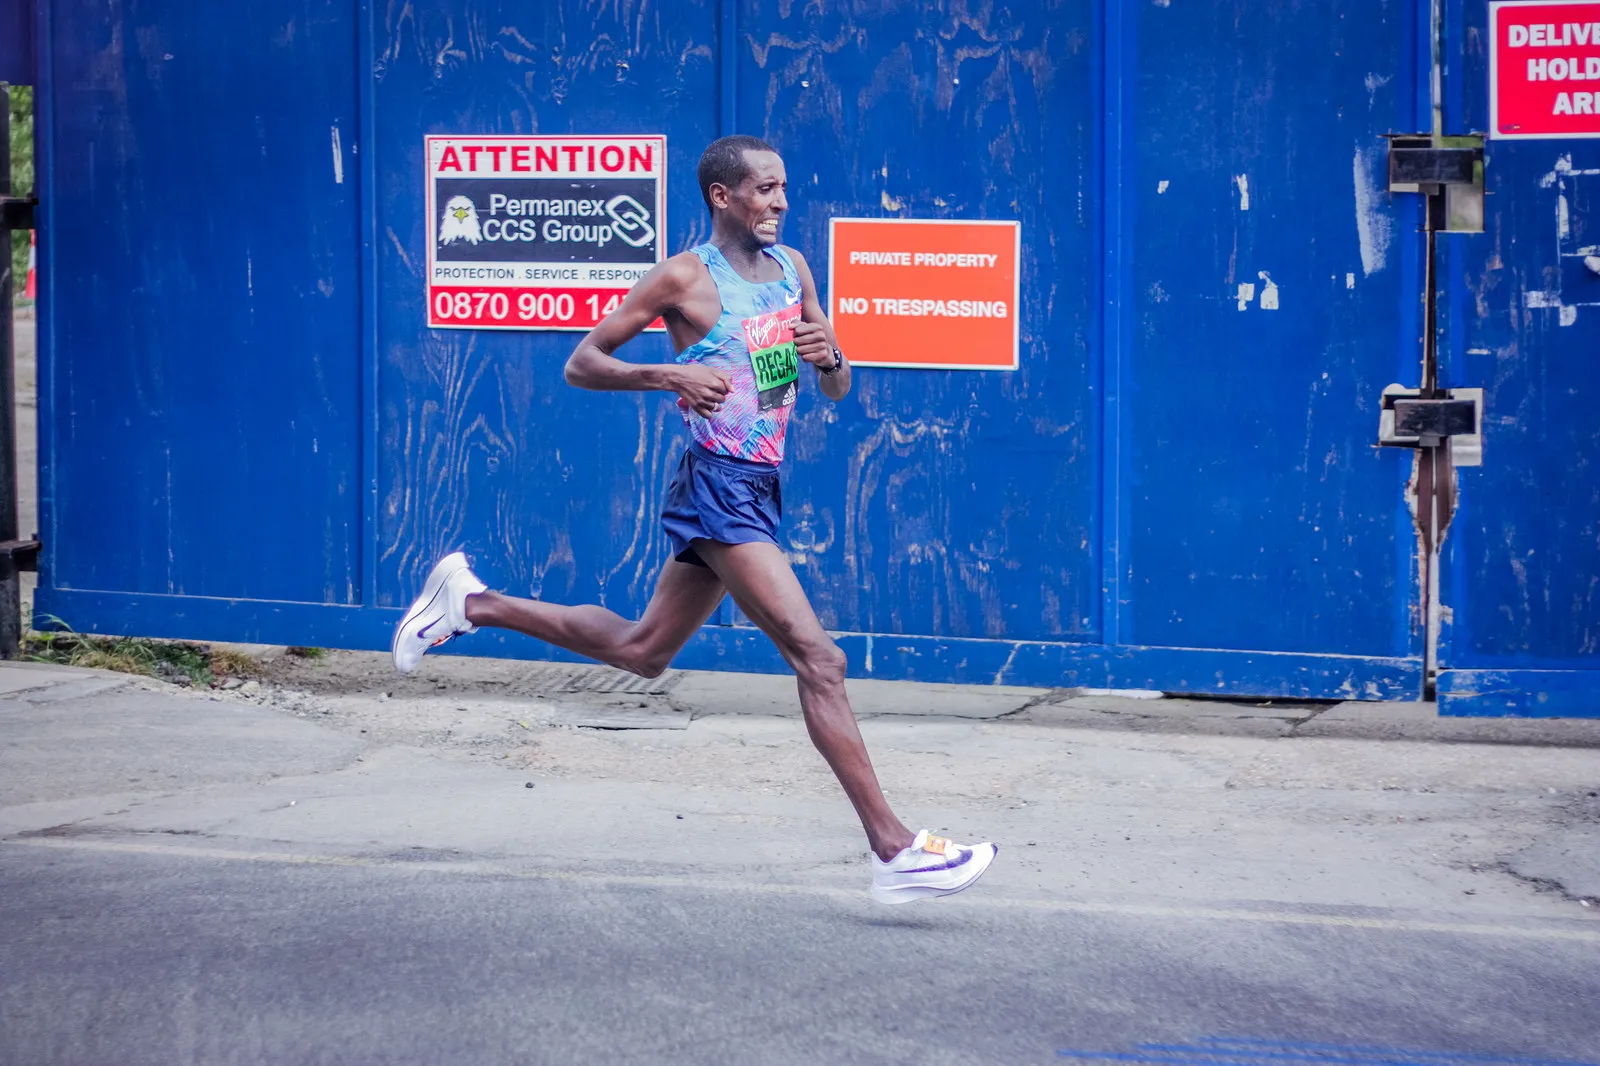 Tilahun Regassa on the course of 2017 London Marathon